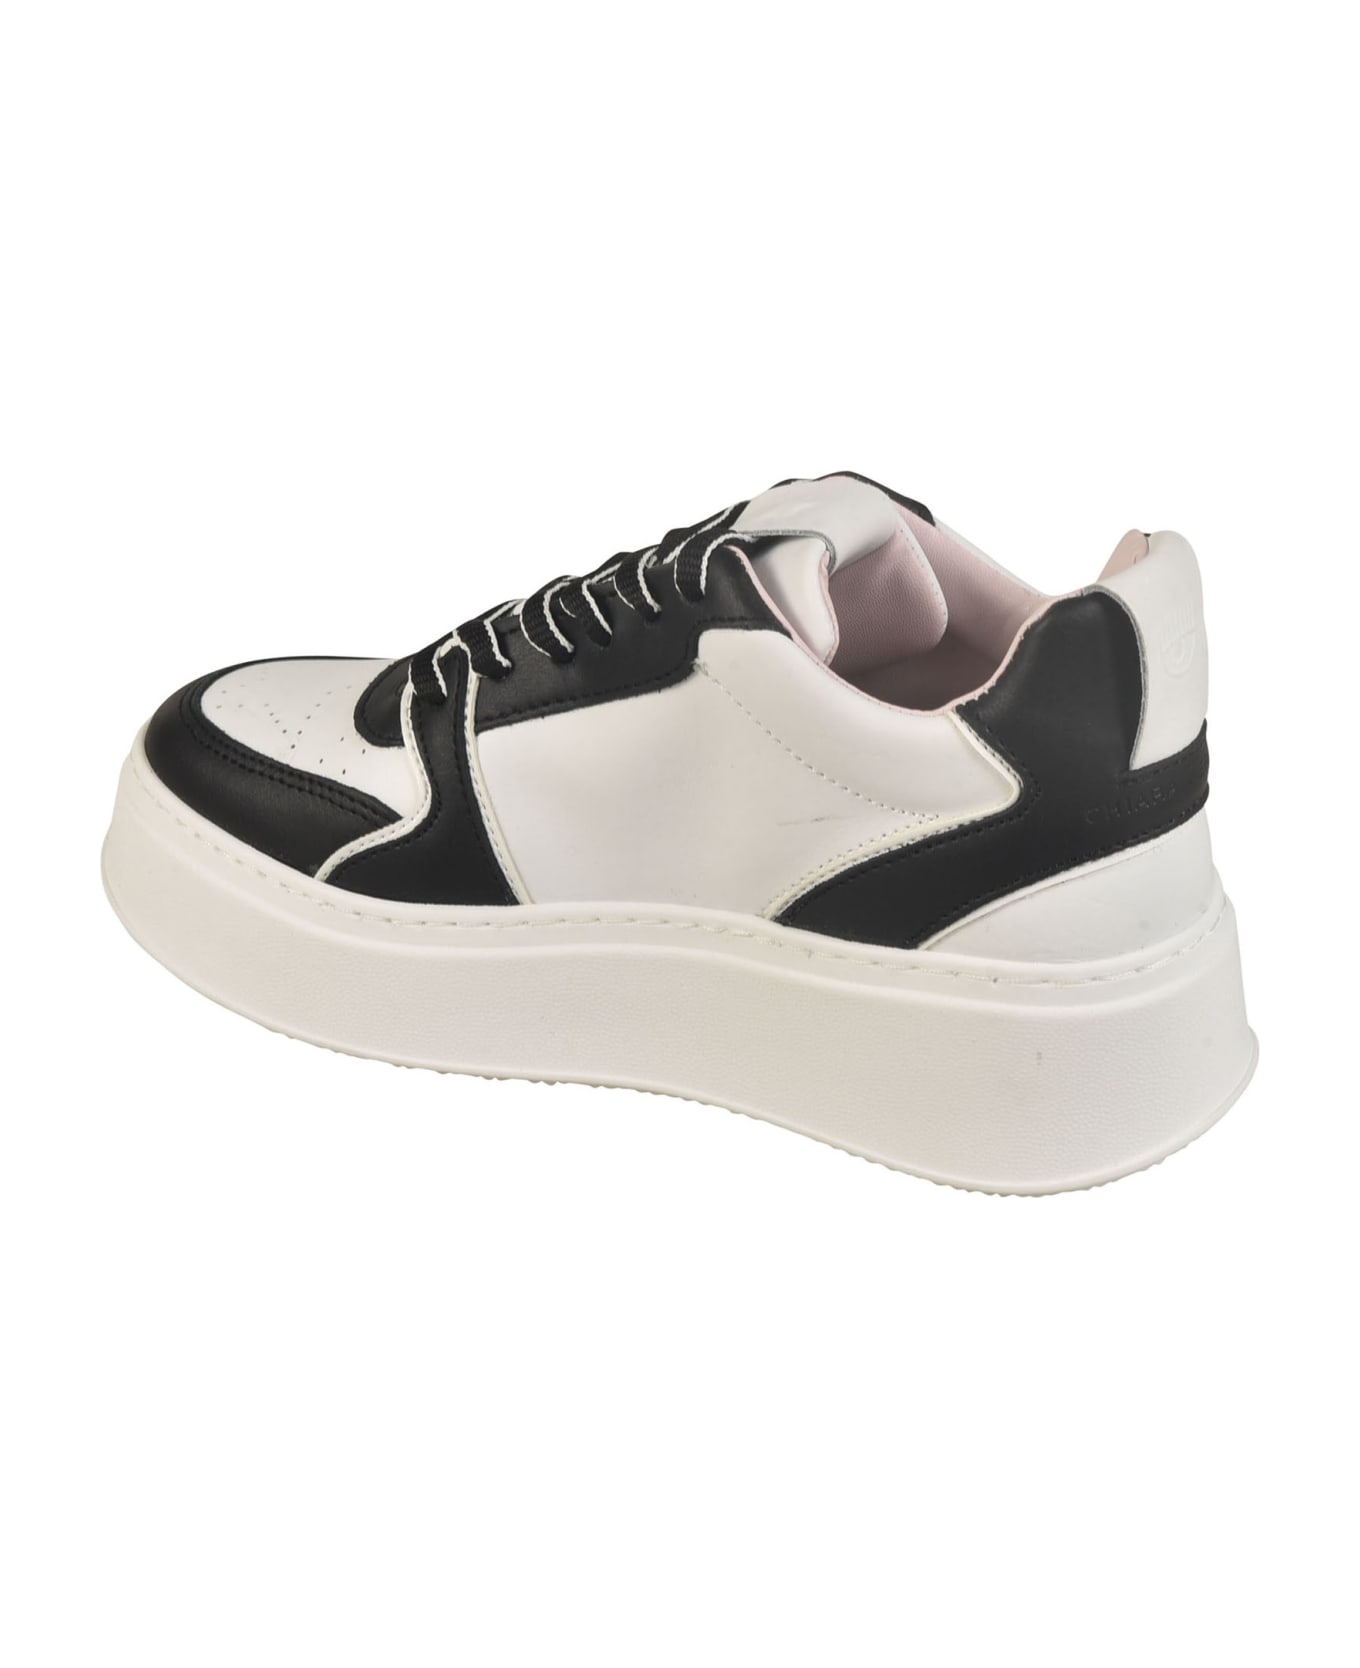 Chiara Ferragni School Sneakers - White/Black